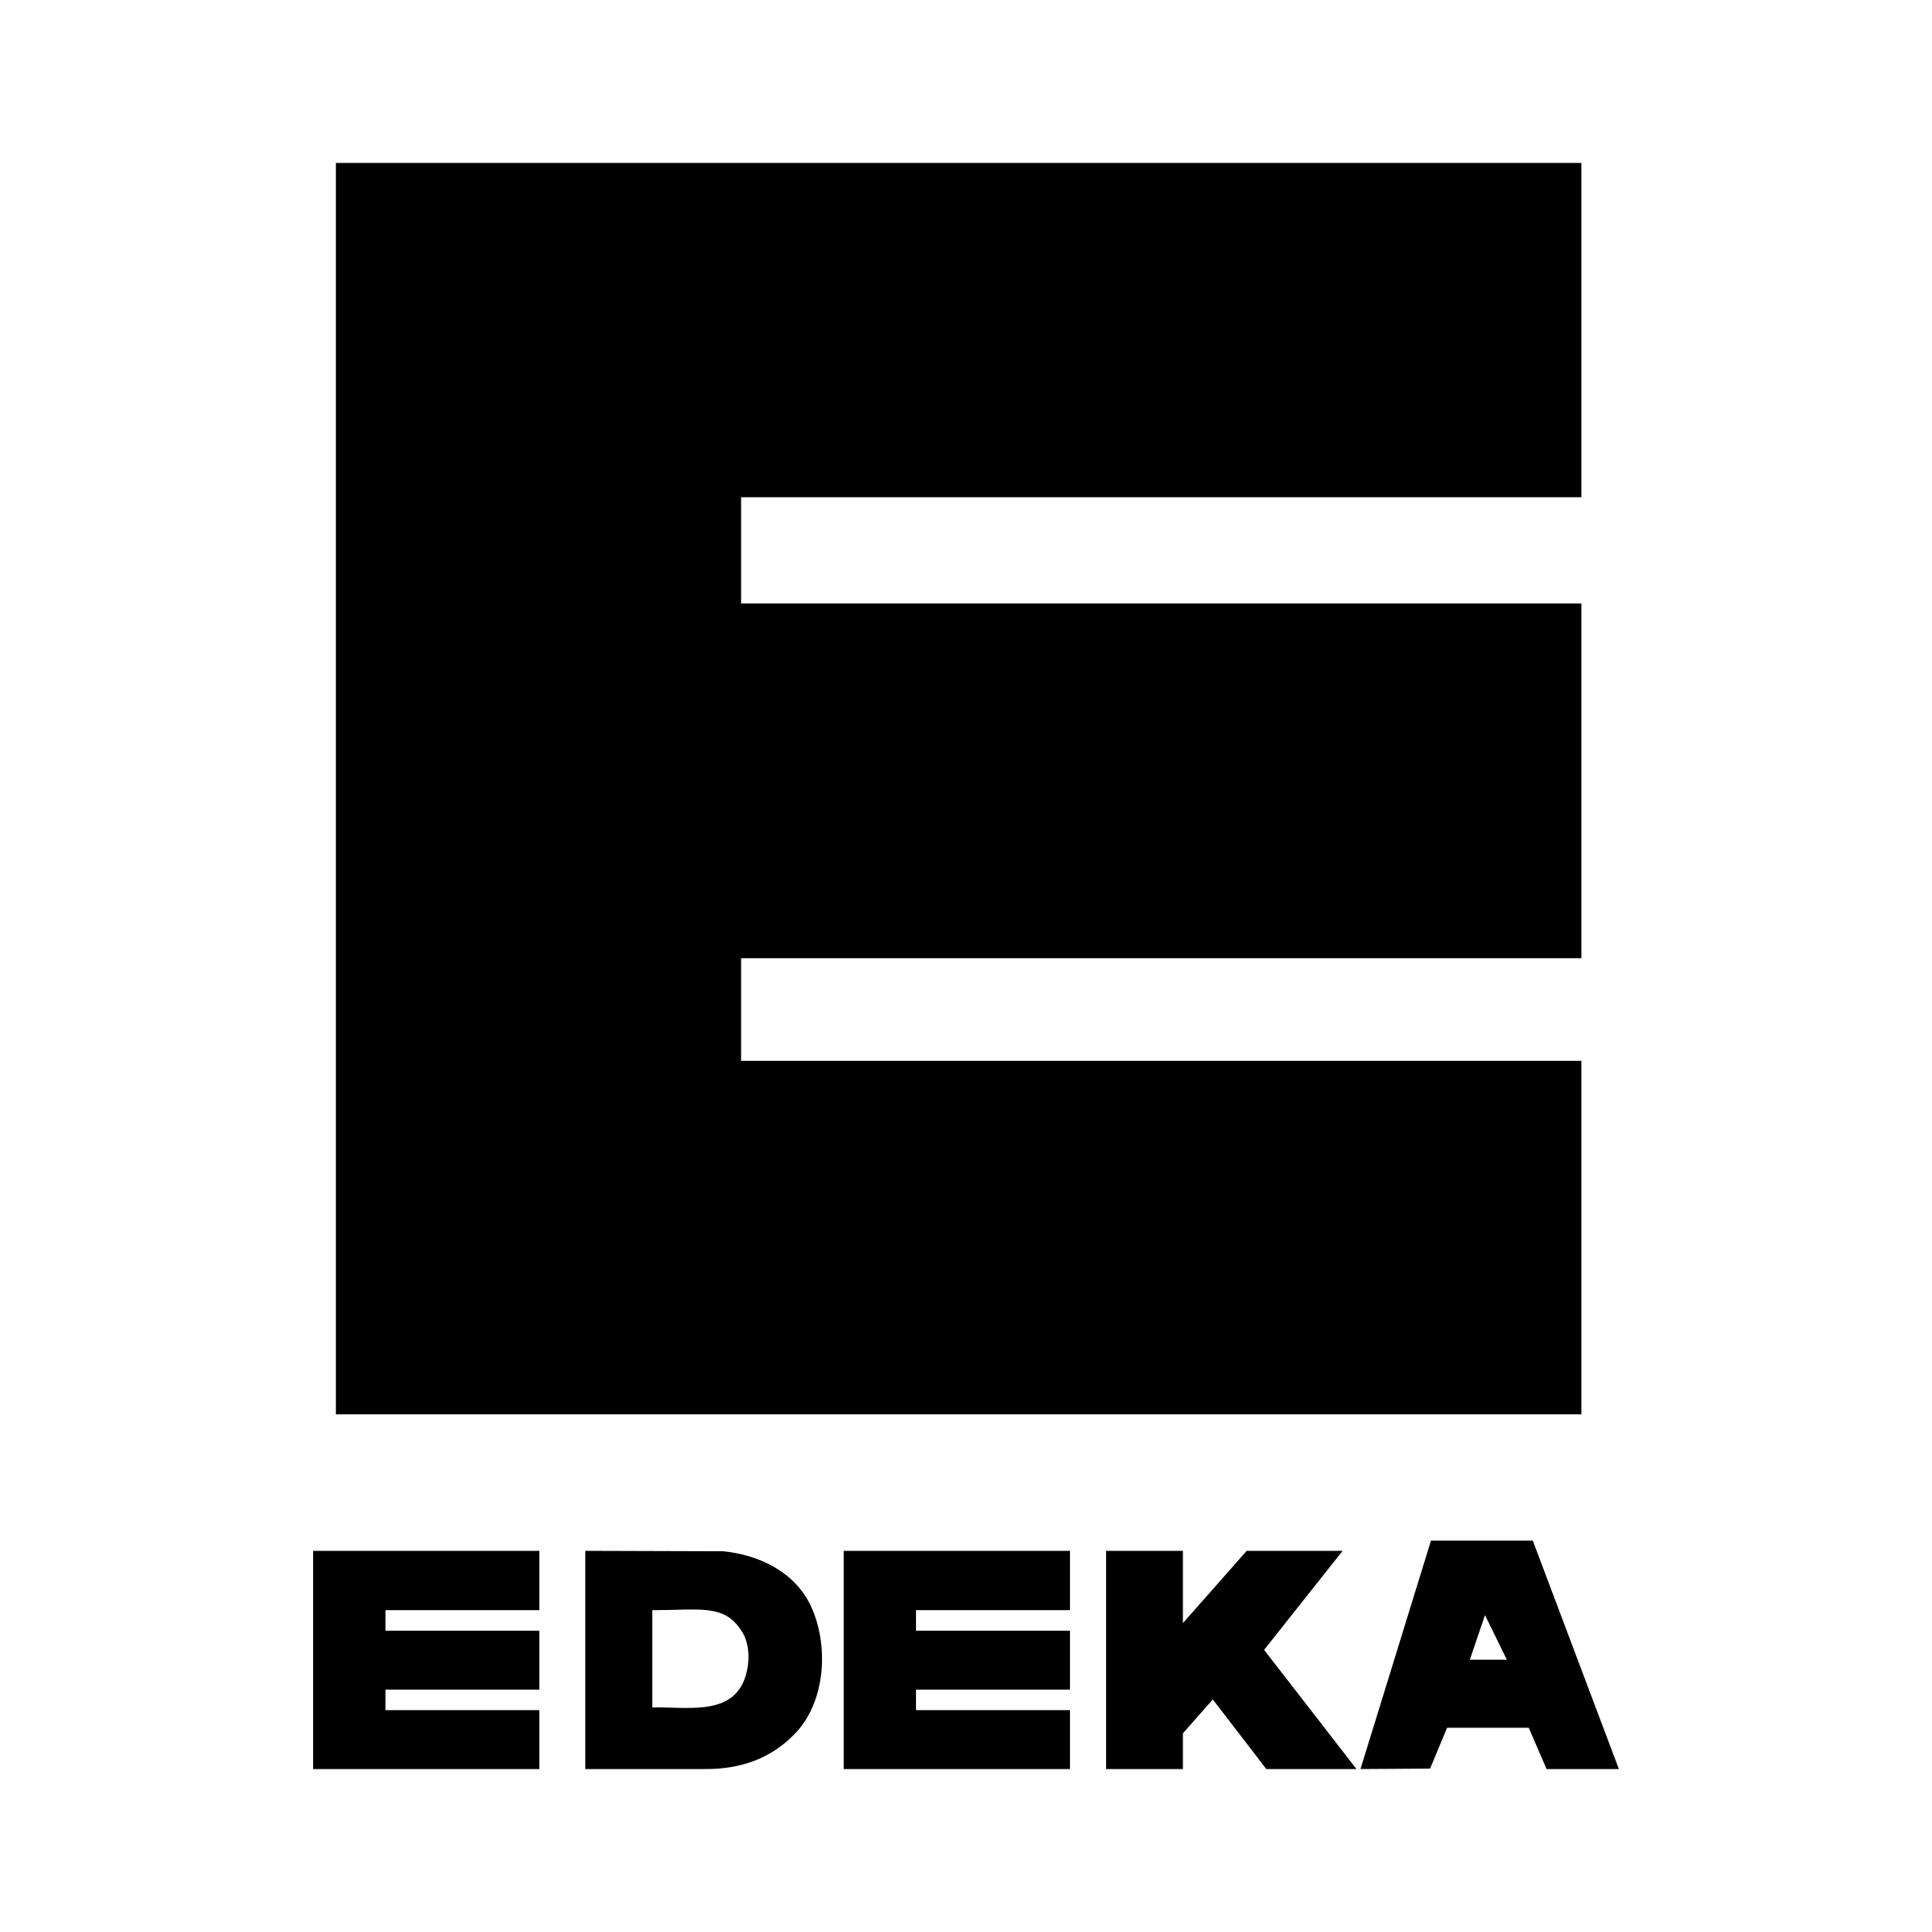 Edeka Logo - Edeka Logo PNG Transparent & SVG Vector